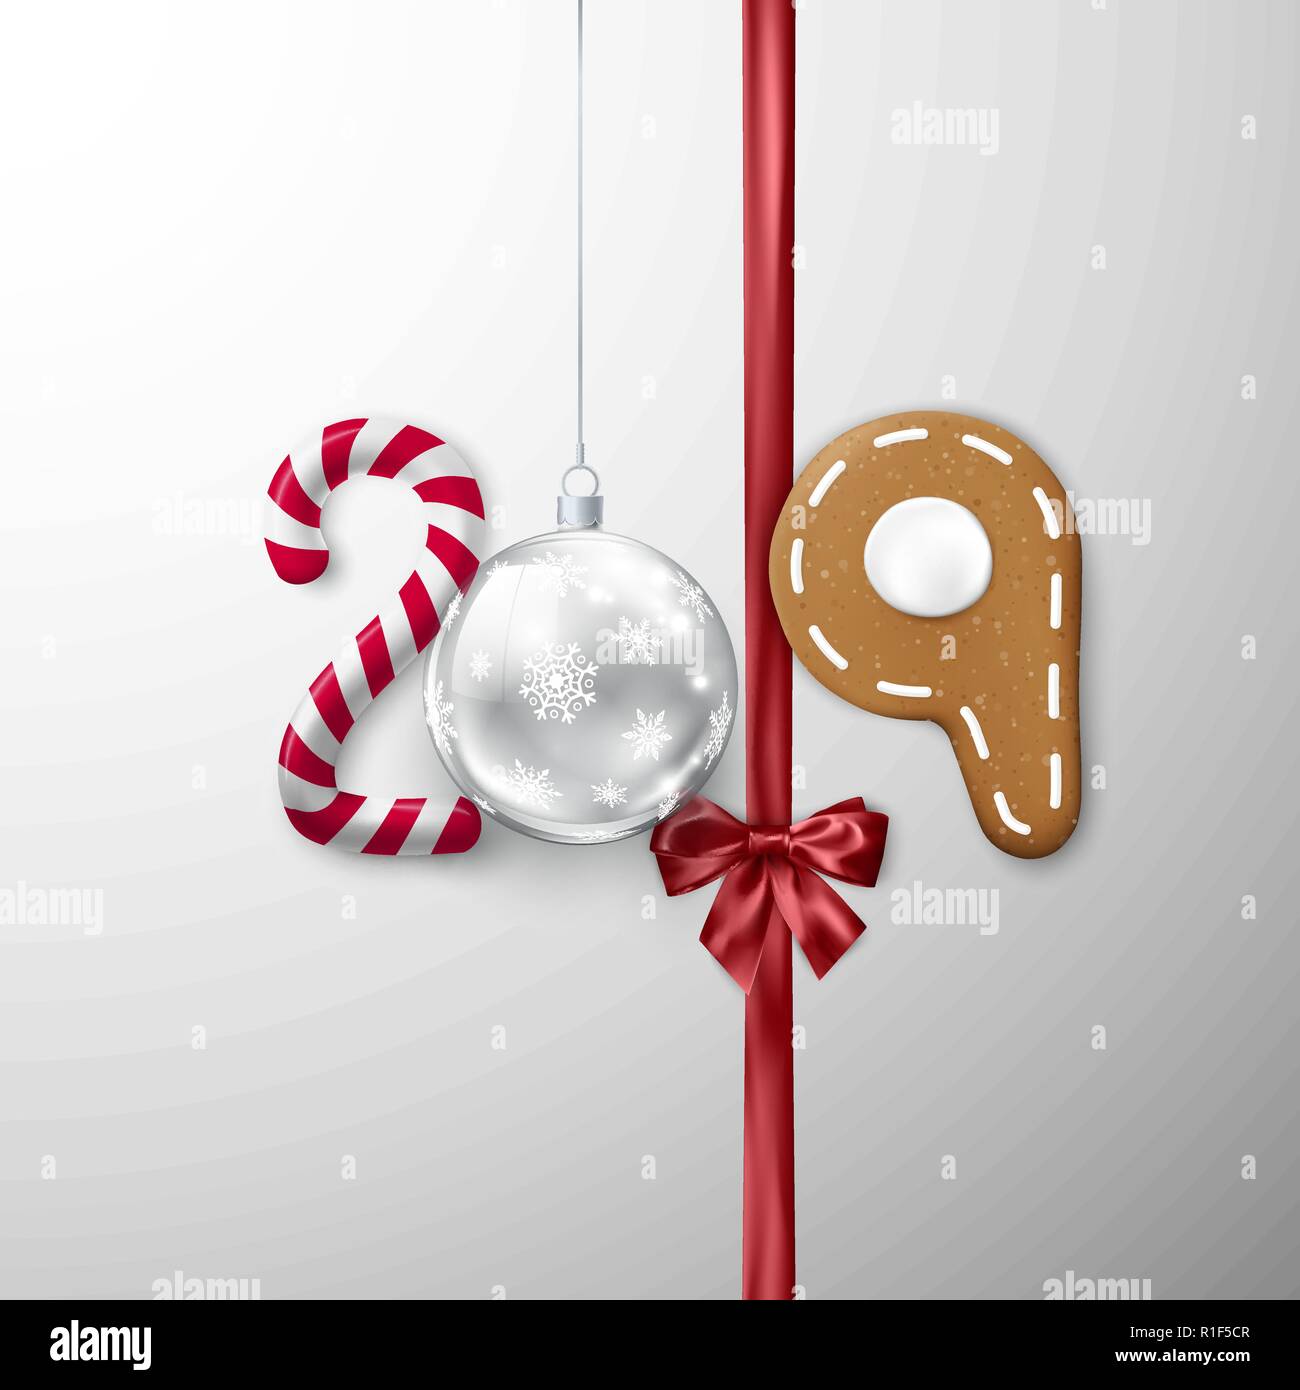 Neues Jahr 2019 Banner. Kreative festliche Schriftzug. Candy und christmas ball Band mit Schleife und Lebkuchen Cookie. Vector Illustration Stock Vektor